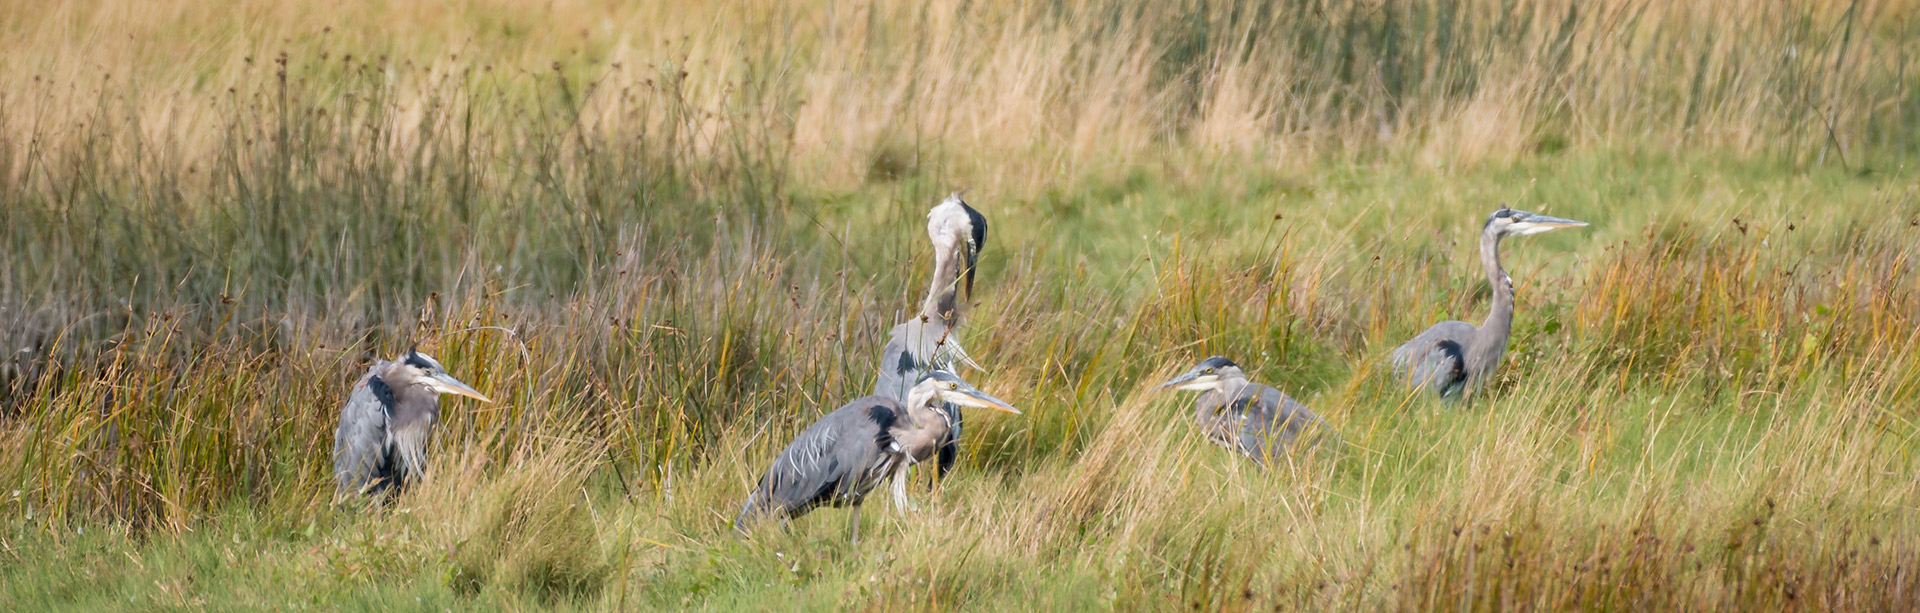 Herons in a Marsh